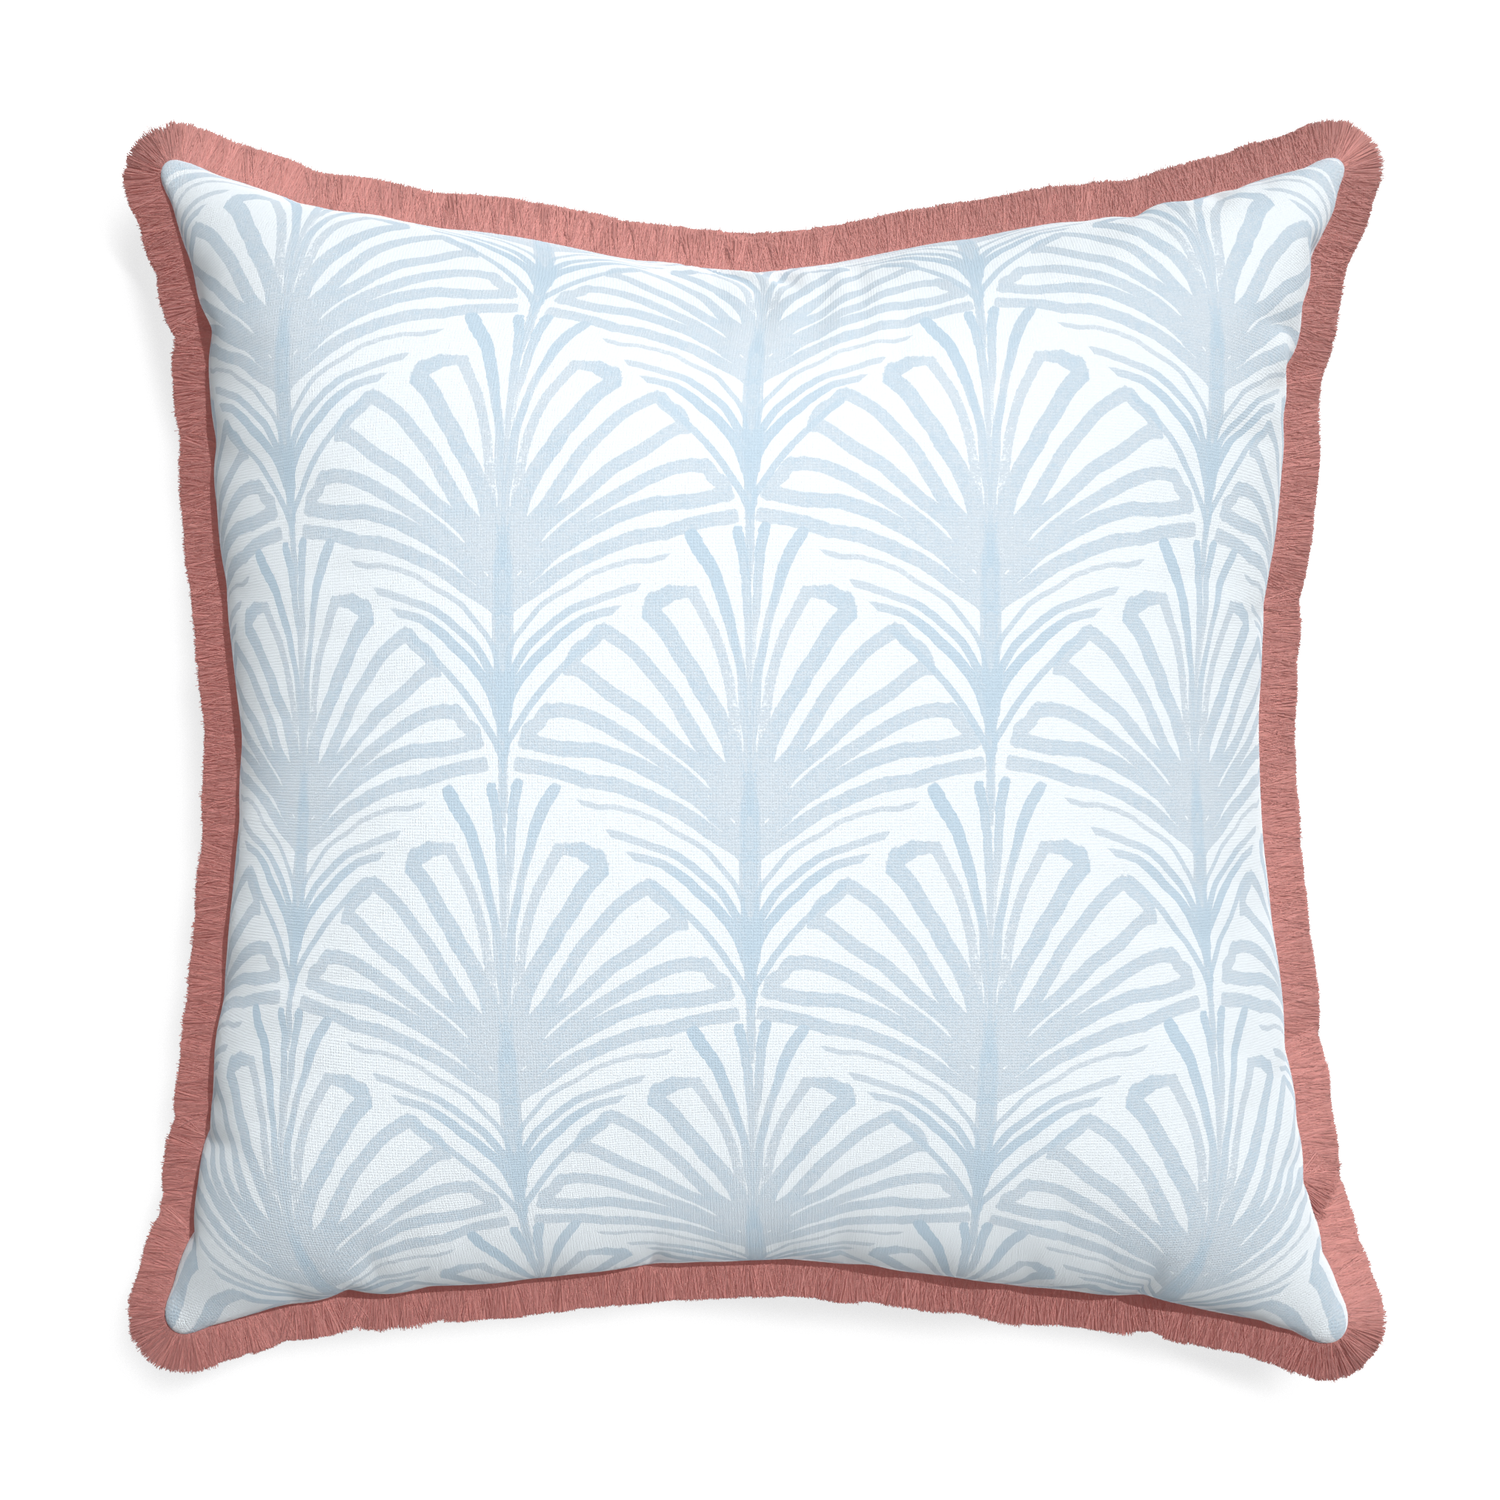 Euro-sham suzy sky custom pillow with d fringe on white background